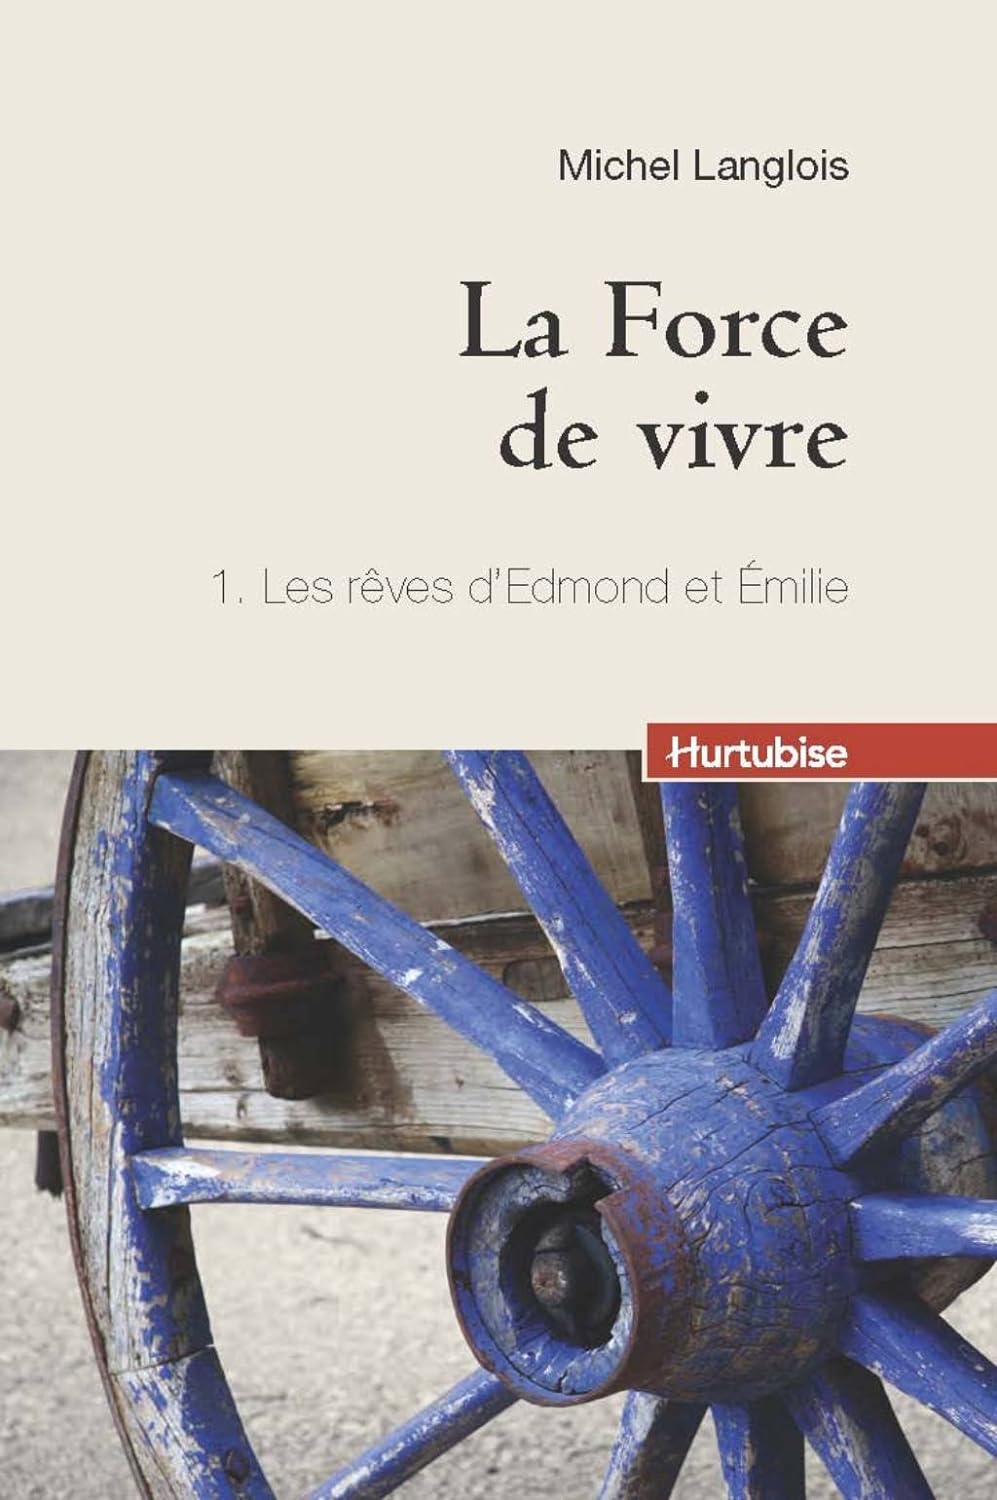 La force de vivre # 1 : Les rêves d'Edmond et Émilie - Michel Langlois